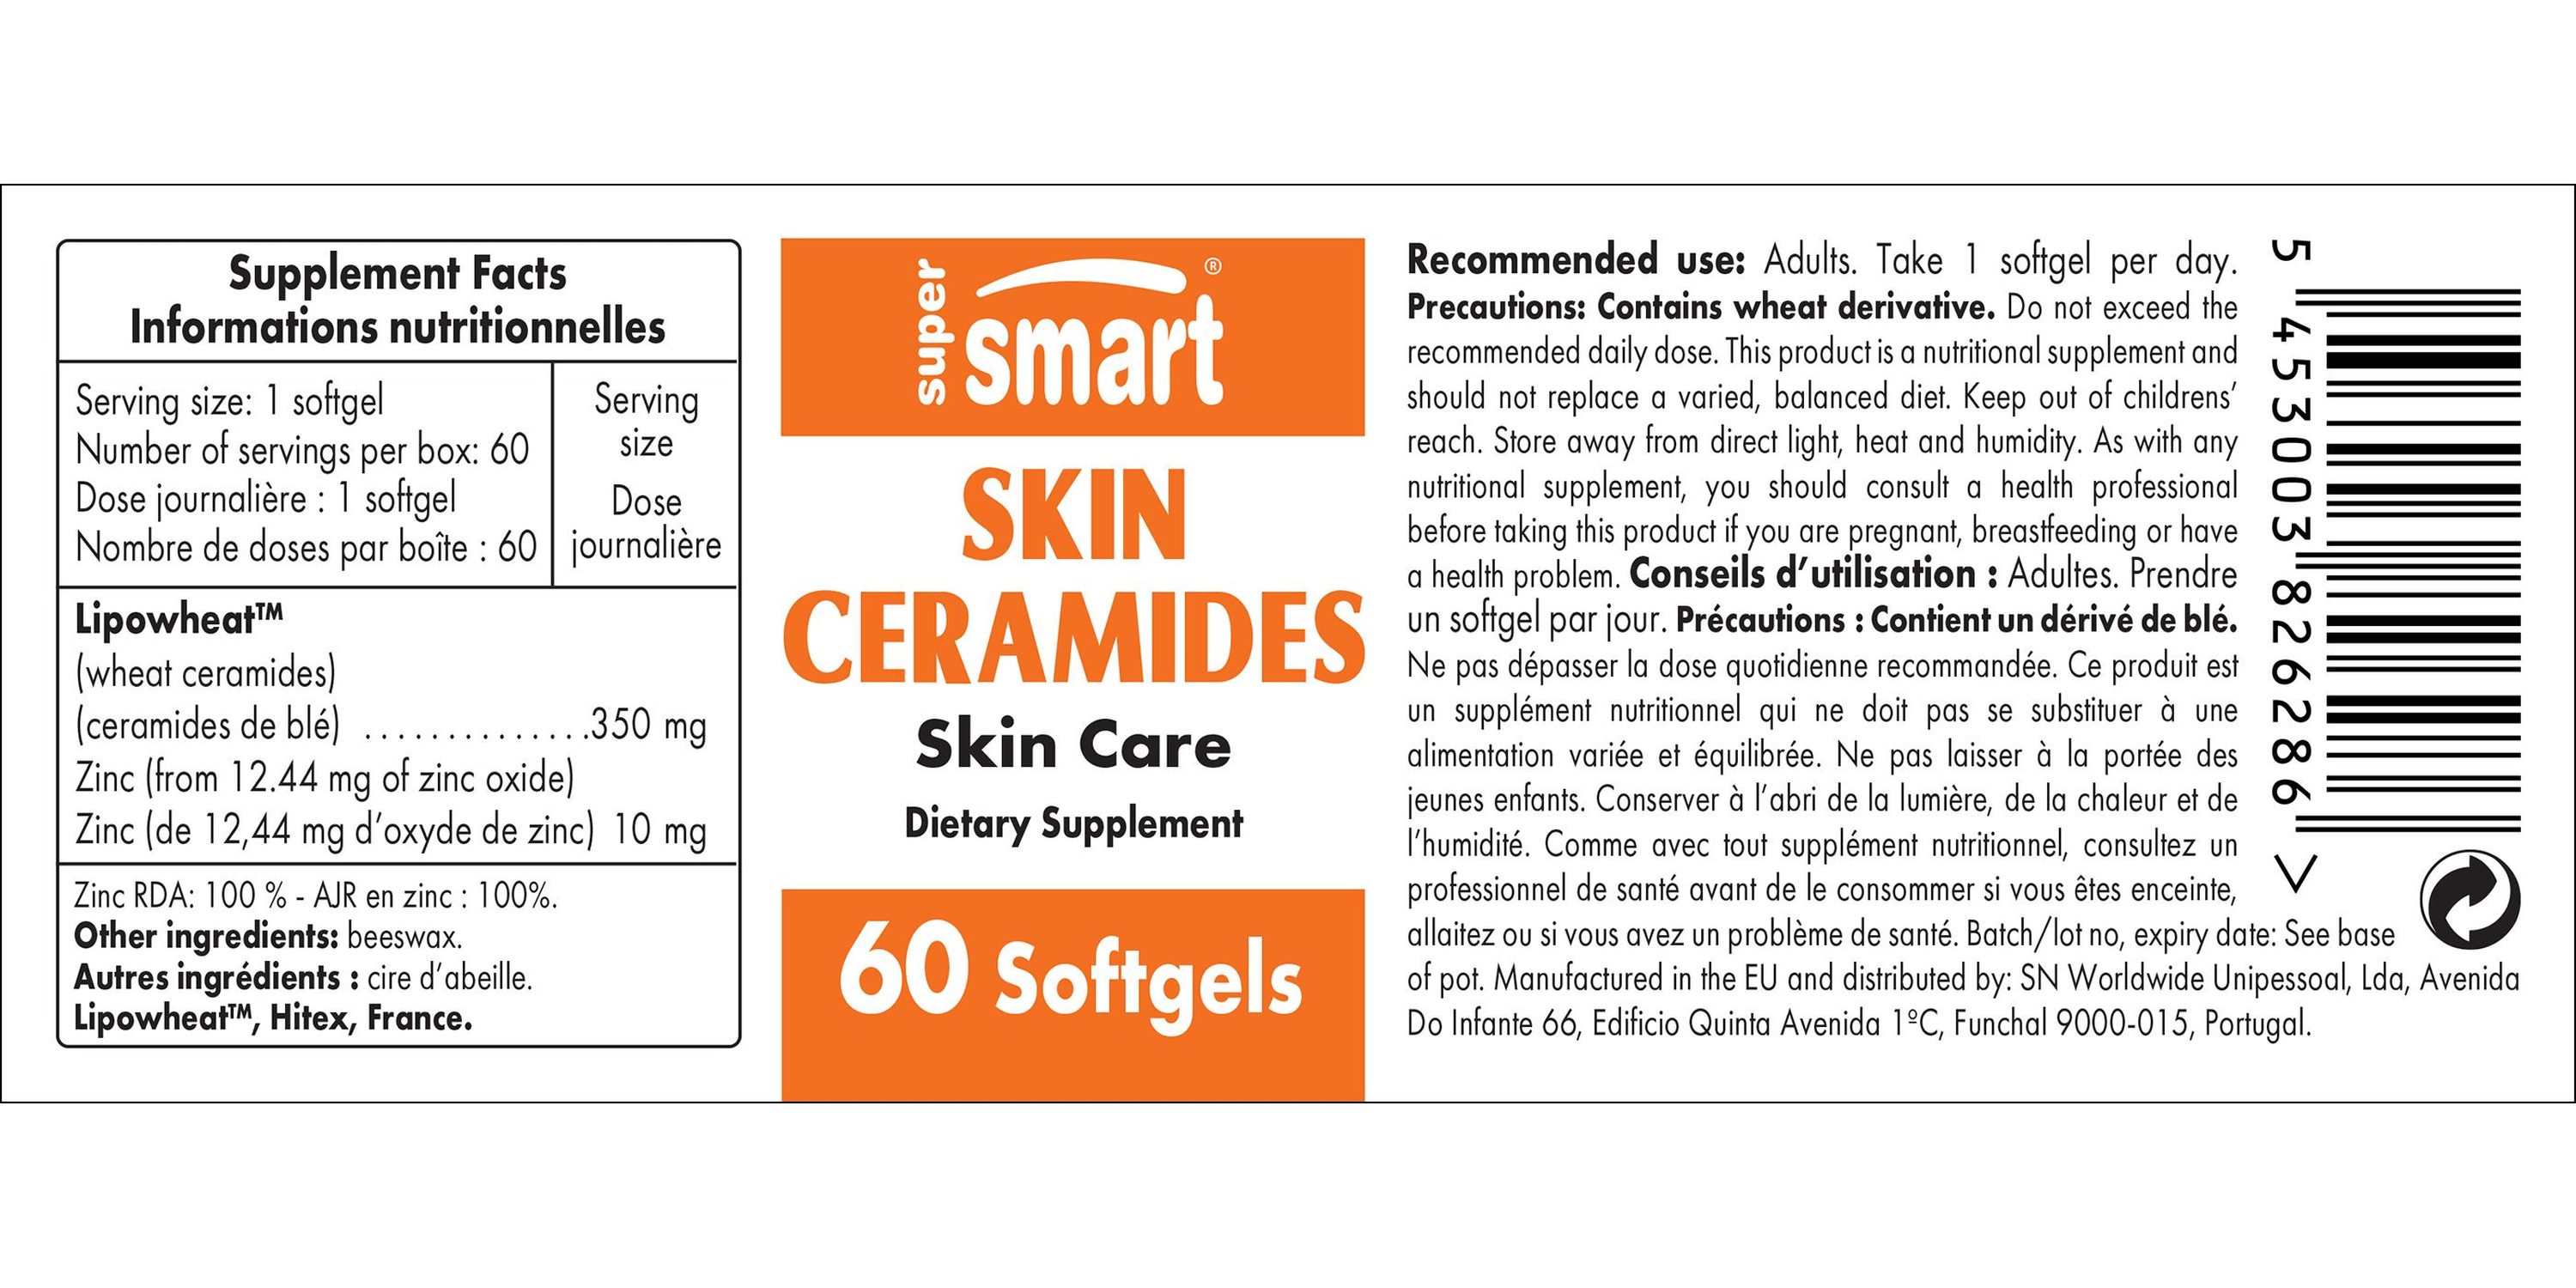 Skin Ceramides